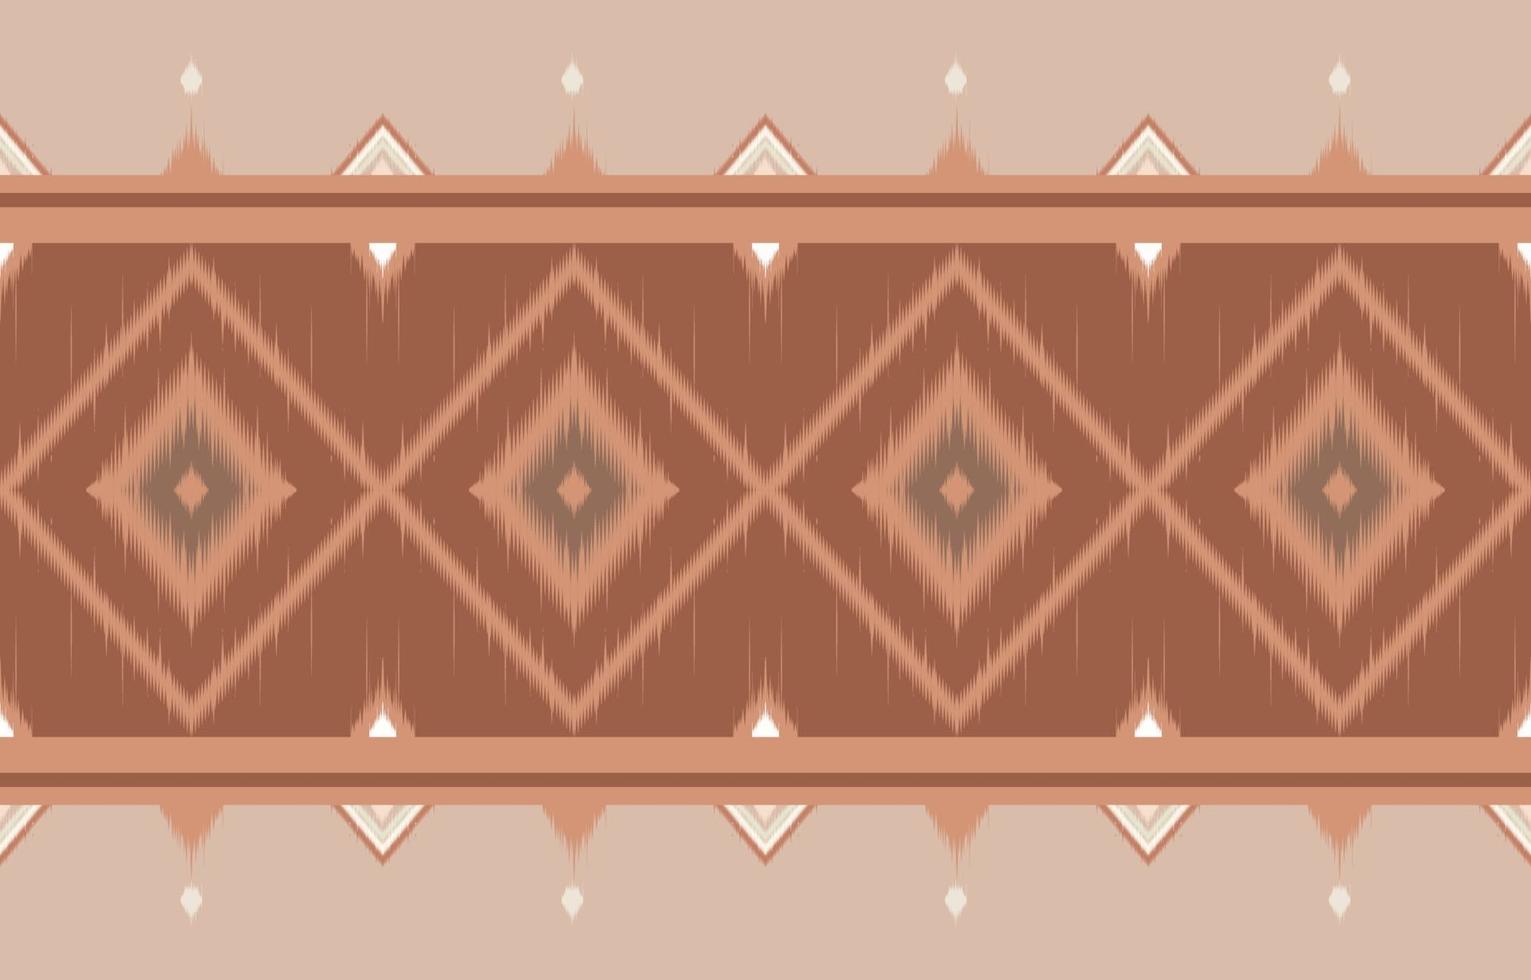 Abstrait horizontal ethnique oriental motif ikat design traditionnel vecteur